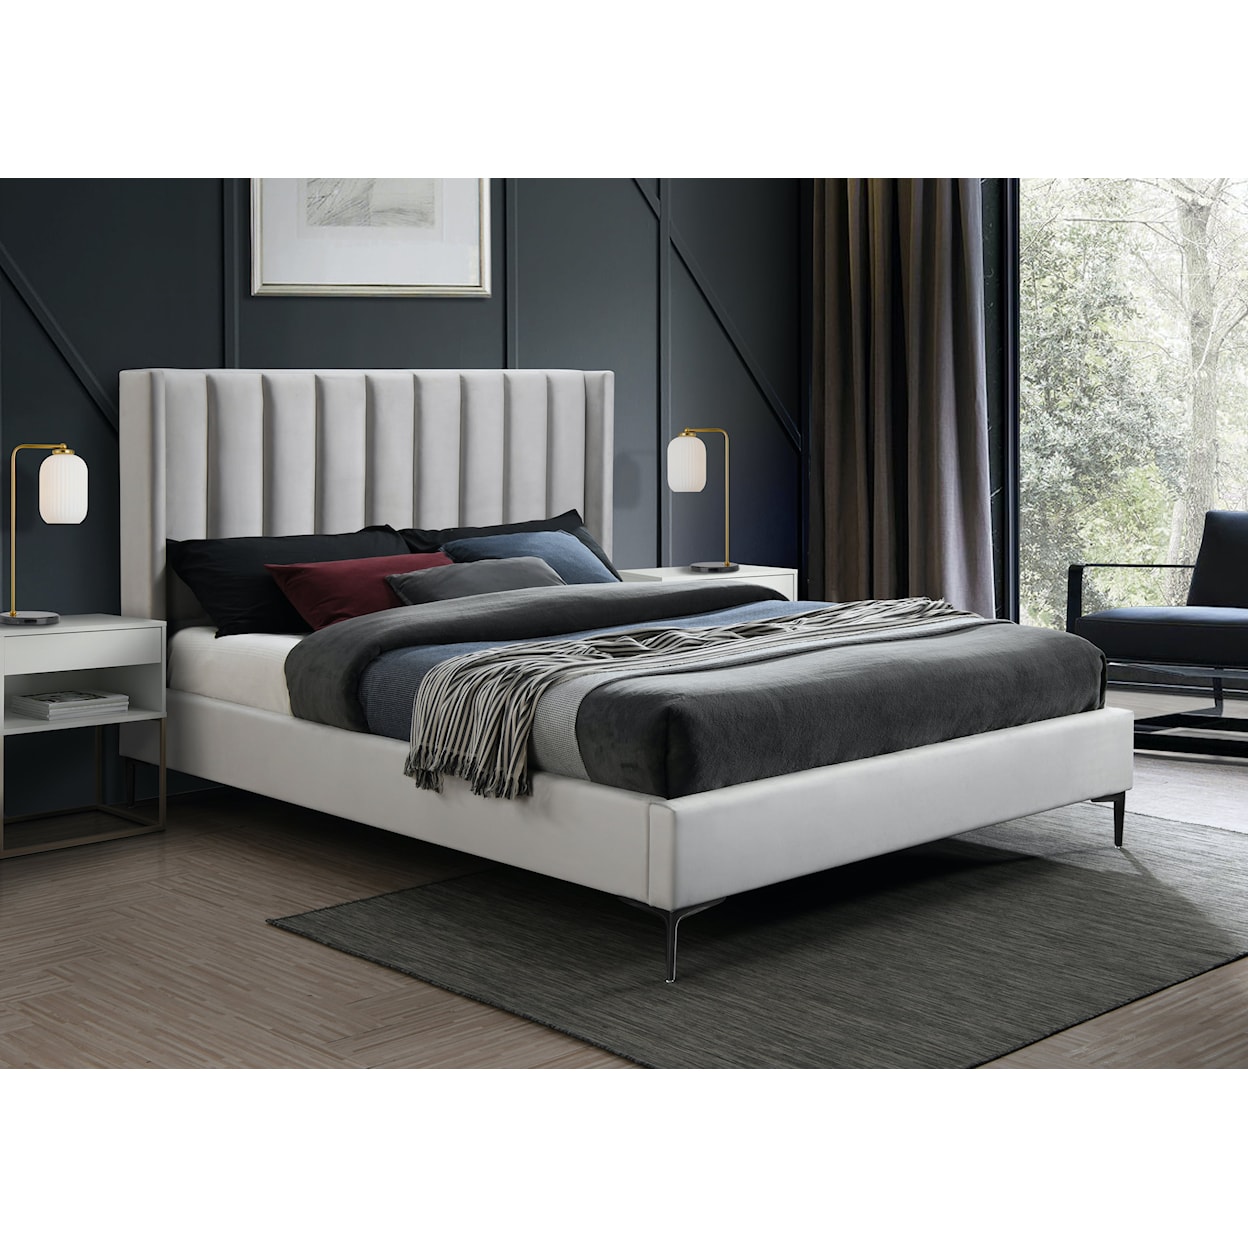 Meridian Furniture Nadia Full Bed